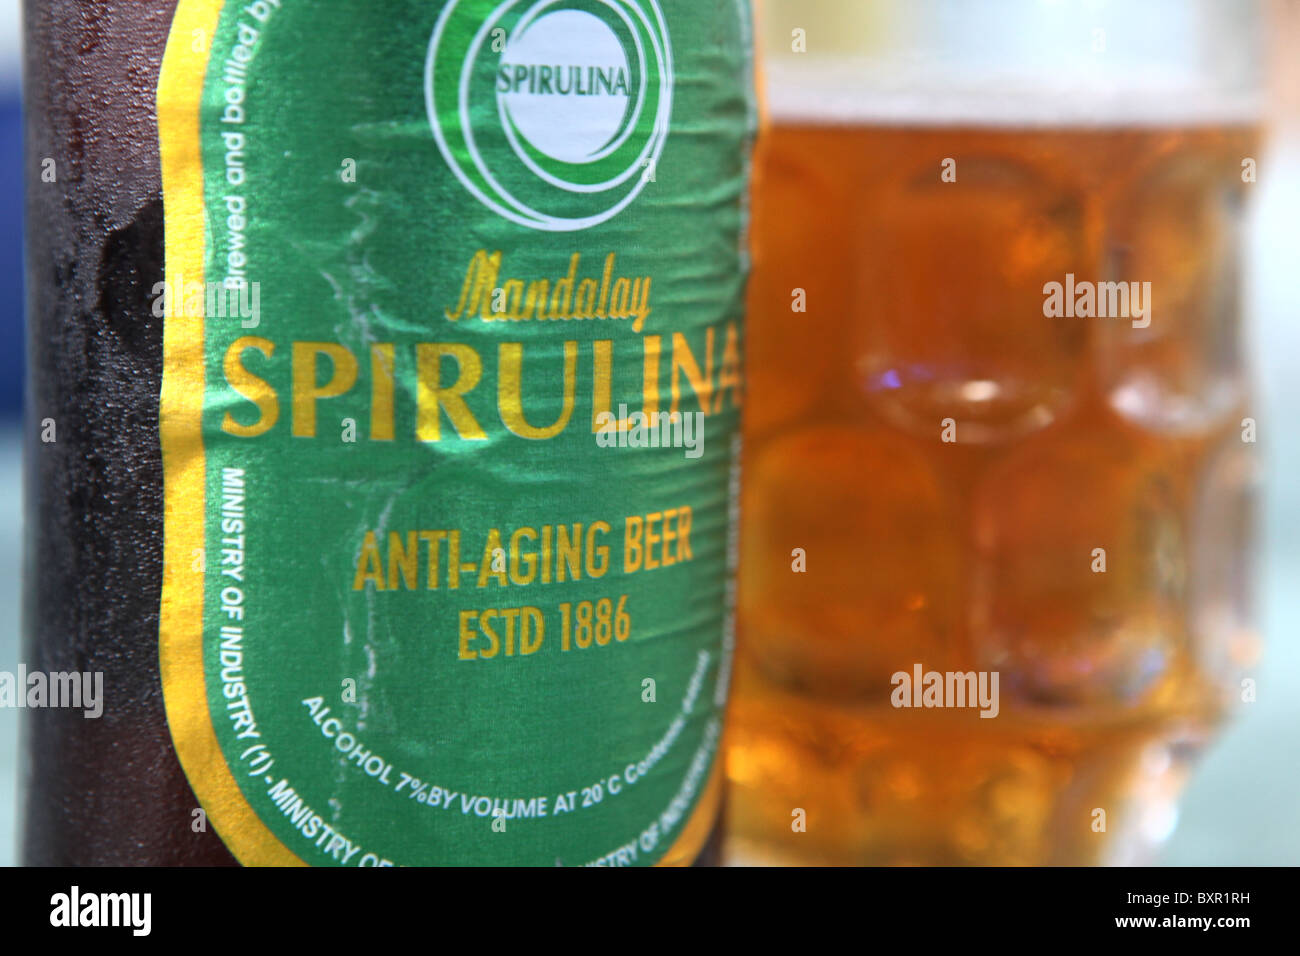 Mandalay Spirulina Anti Envejecimiento de la cerveza vendida en todo Myanmar o Birmania, que contiene espirulina, un alga da salud. Foto de stock